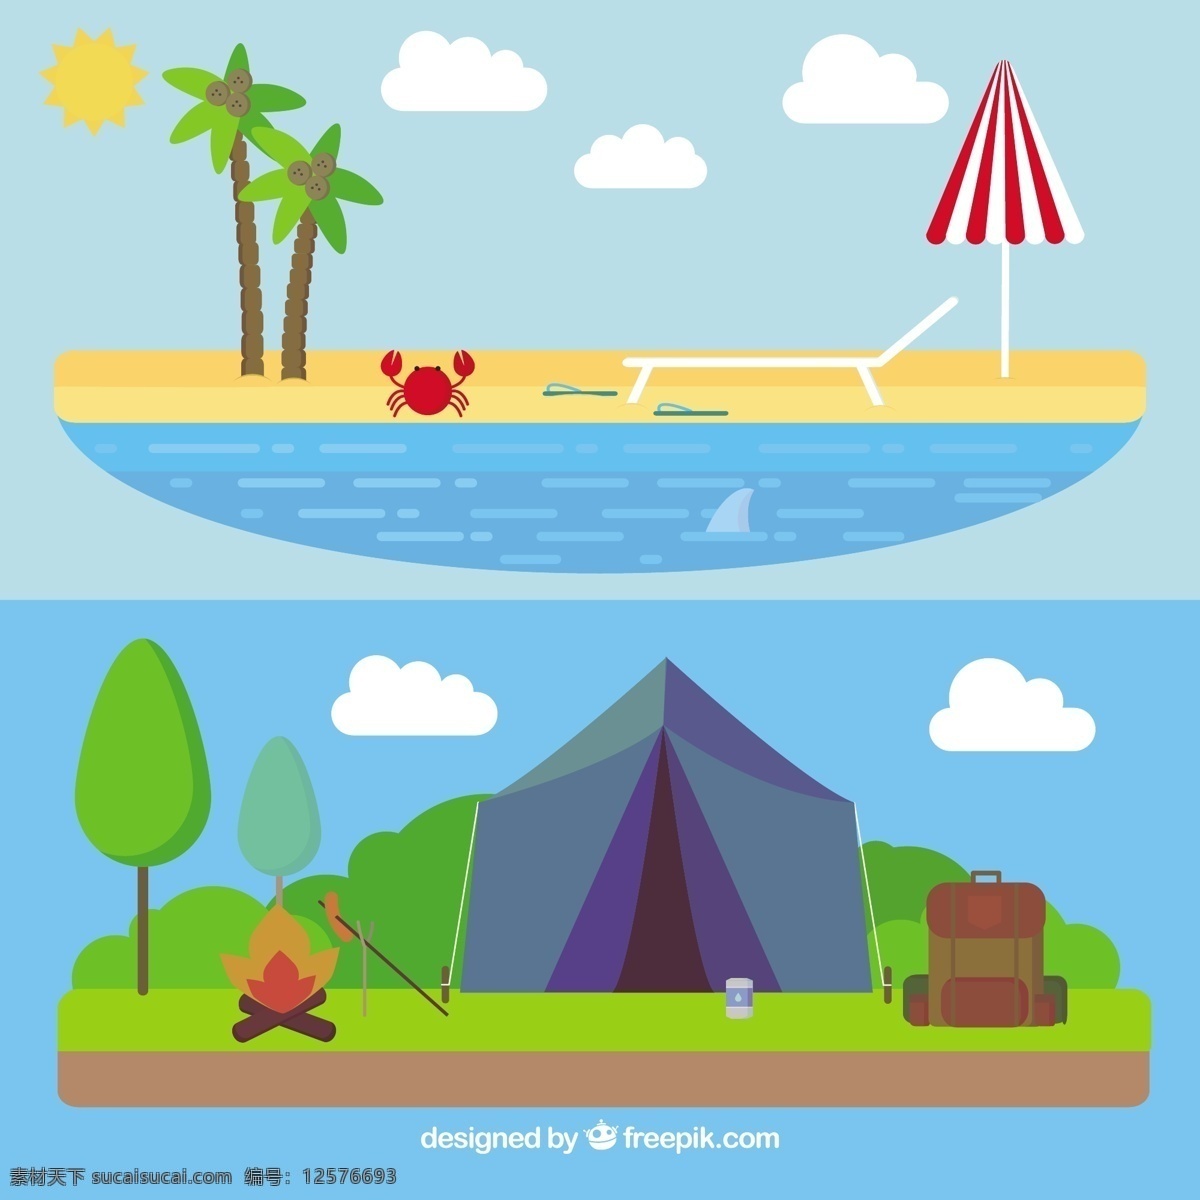 平面设计 中 夏季 景观 背景 太阳 沙滩 大海 平面 节日 雨伞 树木 海洋 棕榈 度假 野营 帐篷 夏天海滩 阳光